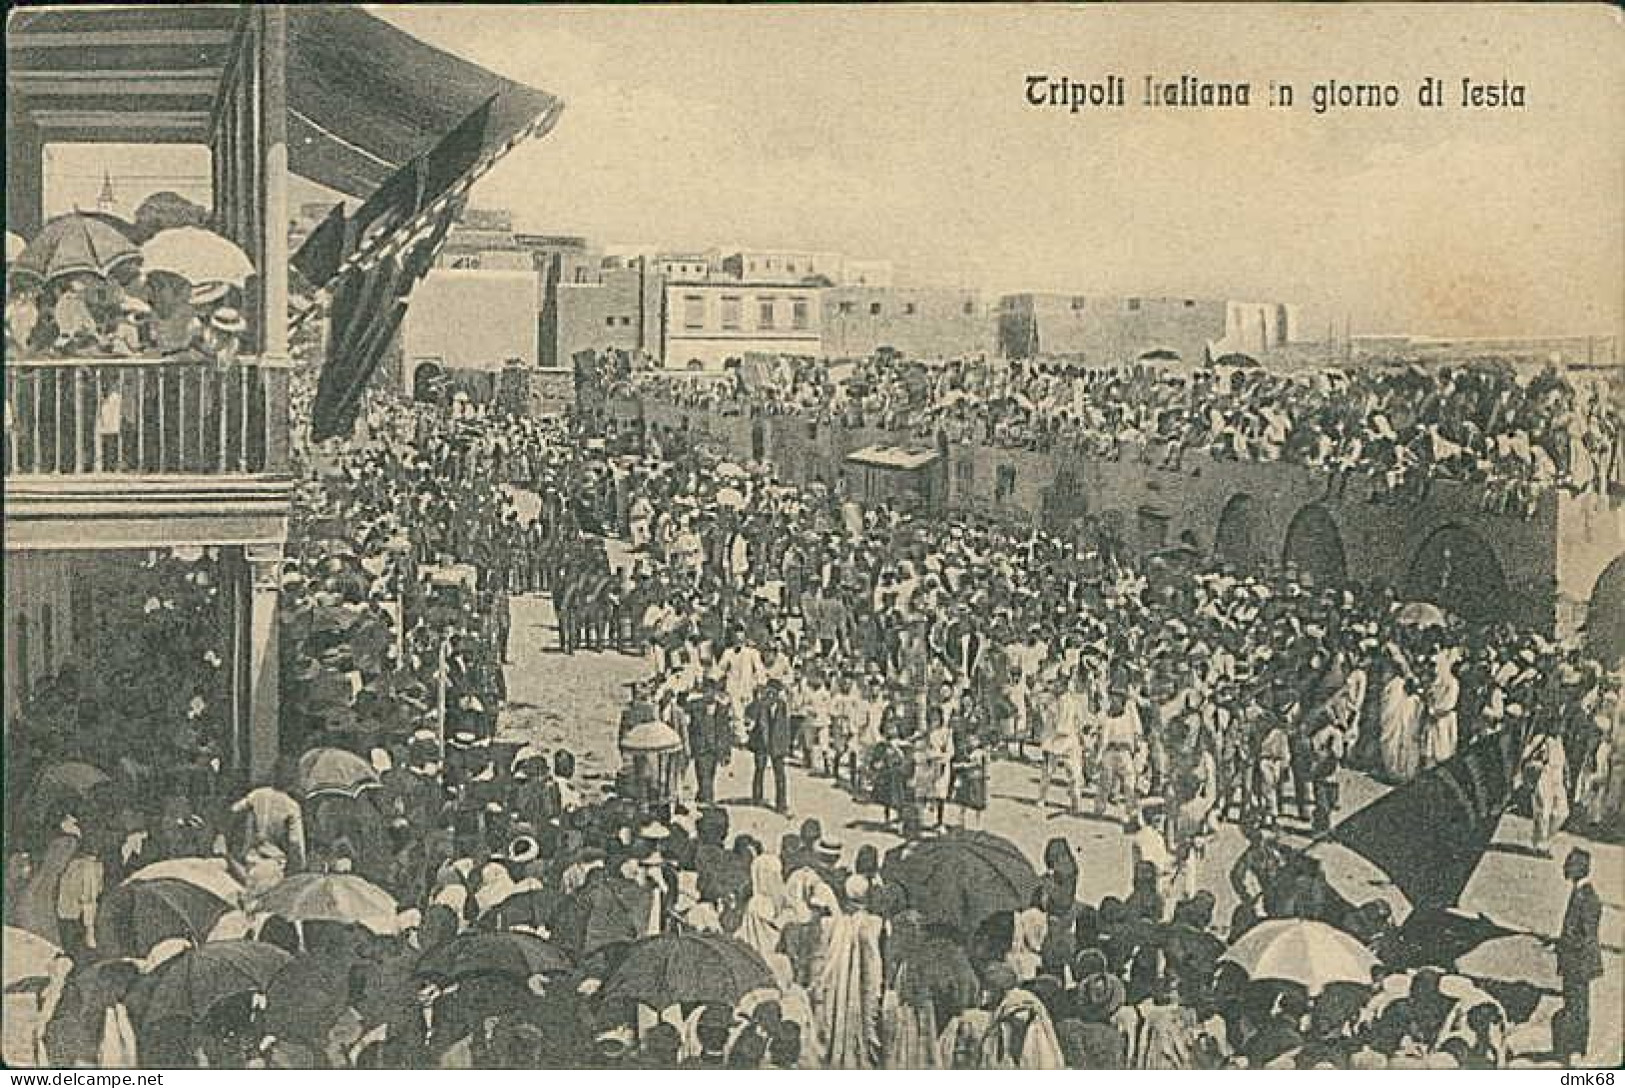 LIBIA / LIBYA - TRIPOLI ITALIANA IN GIORNO DI FESTA - ED. ALTEROCCA 1910s (12456) - Libyen